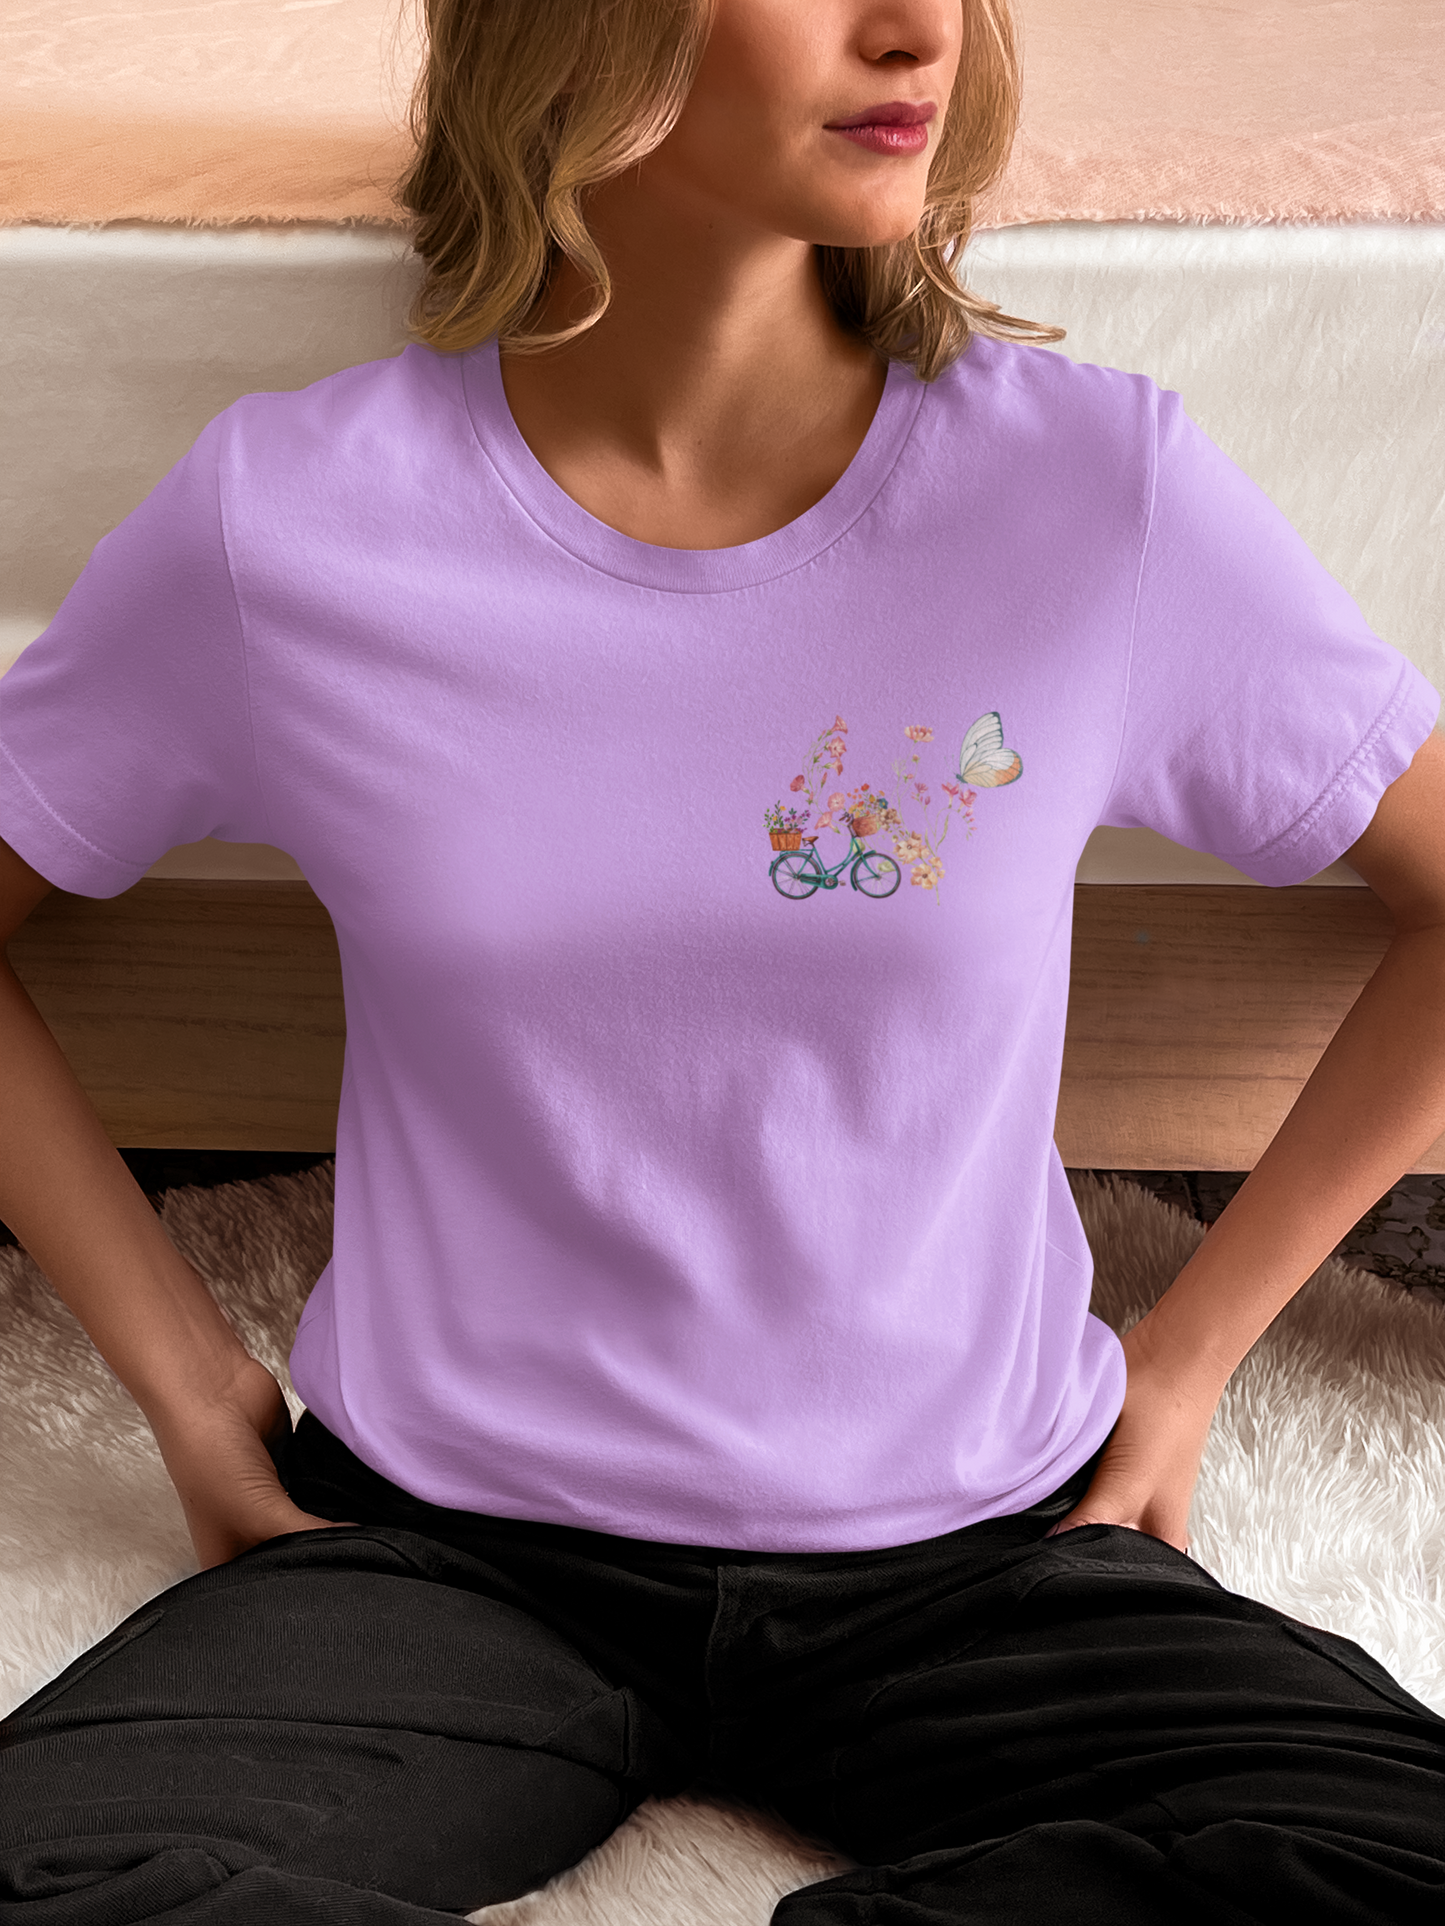 Camiseta con estampado de flores salvajes en la espalda y pequeño diseño en la parte frontal.